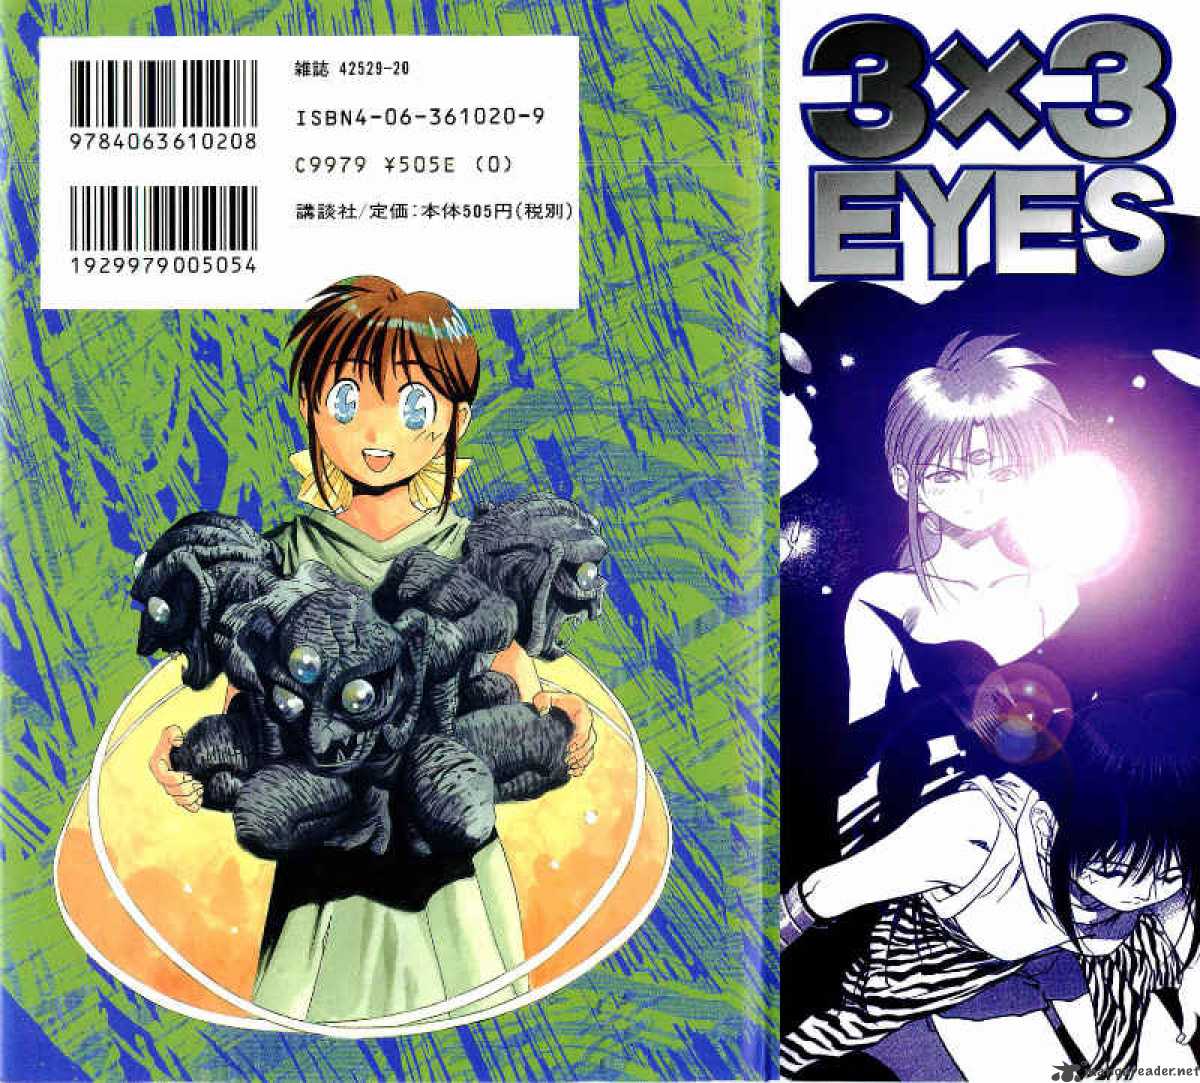 3x3 Eyes 539 2